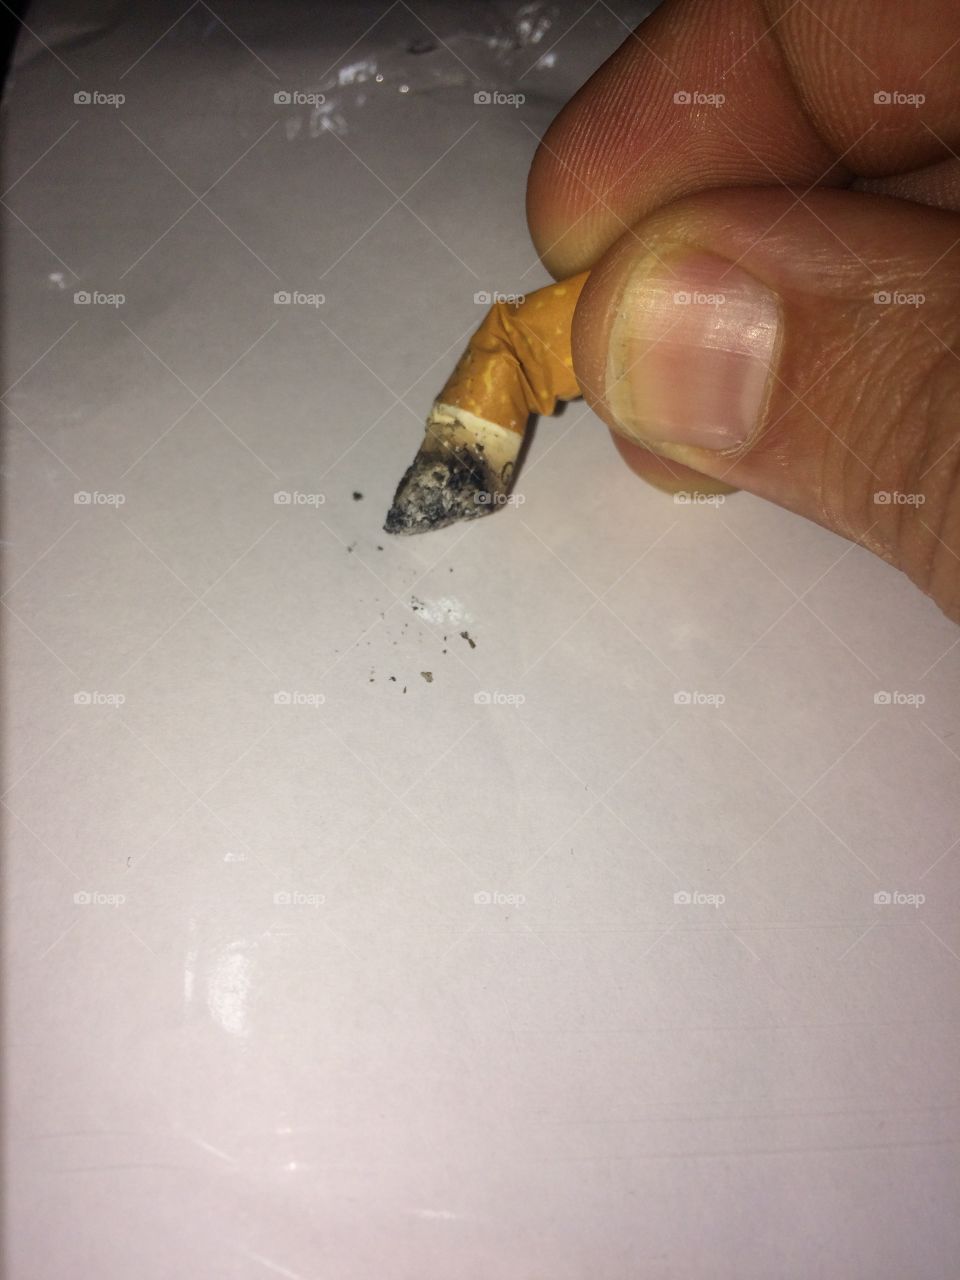 
The last cigarette